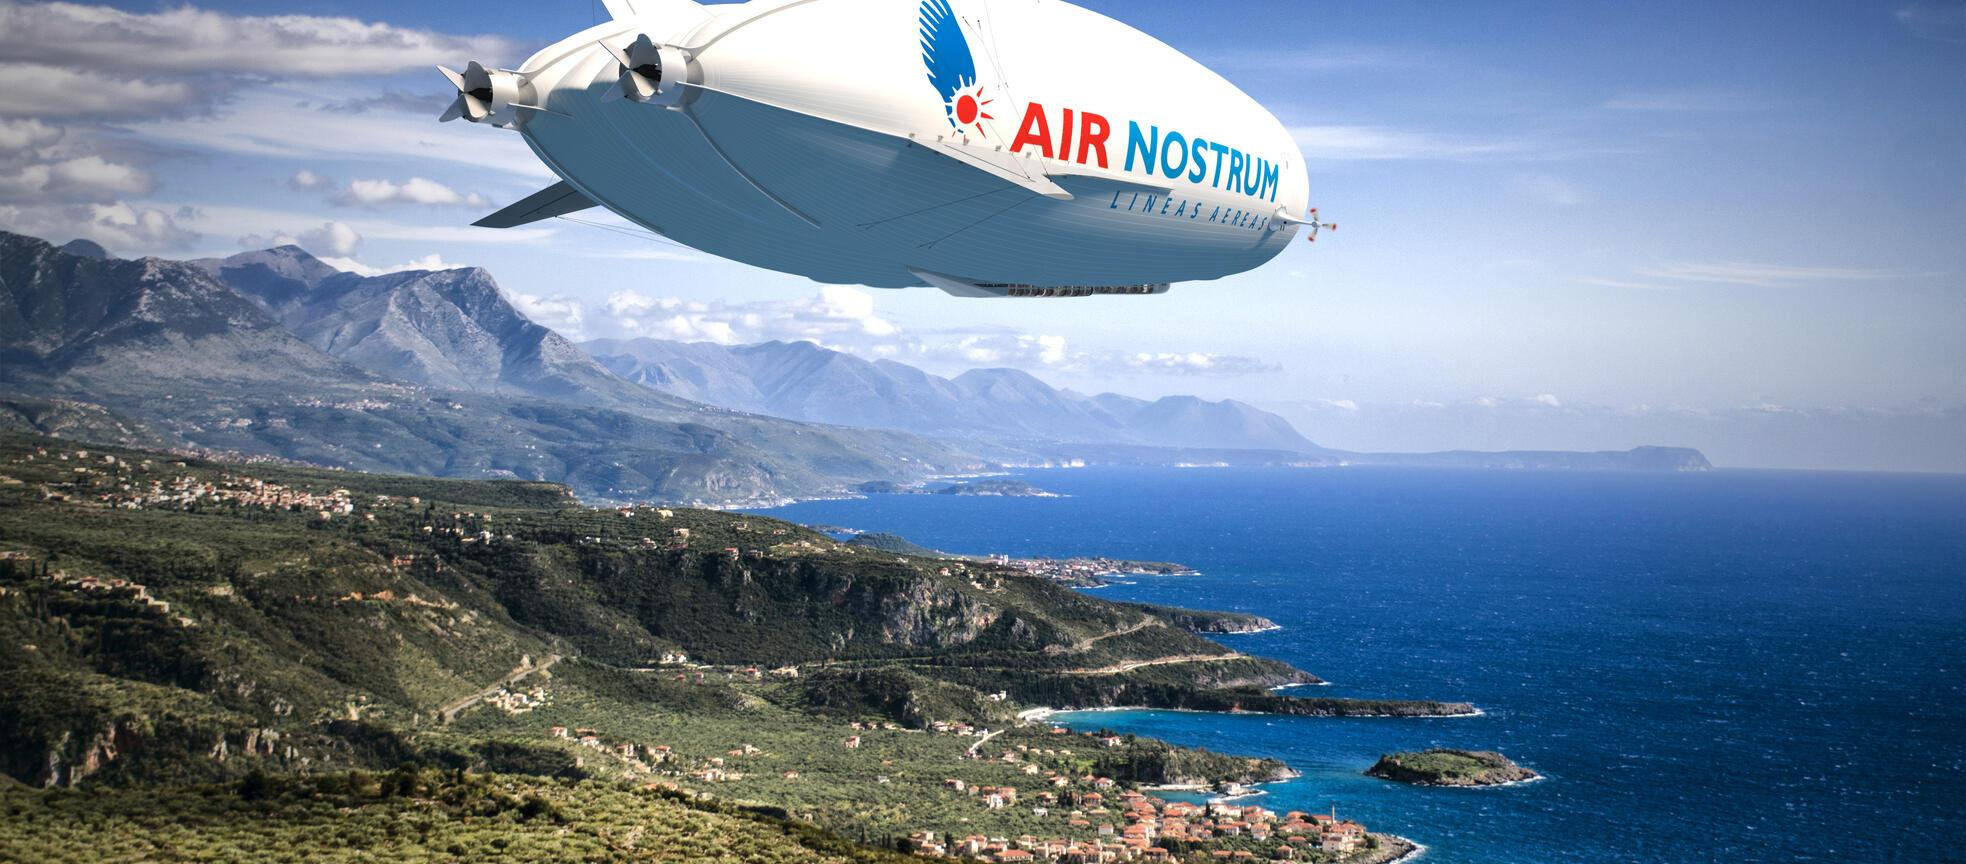 Air Nostrum запустит в Испании региональные перелеты на дирижаблях, компания уже их заказала - Техно